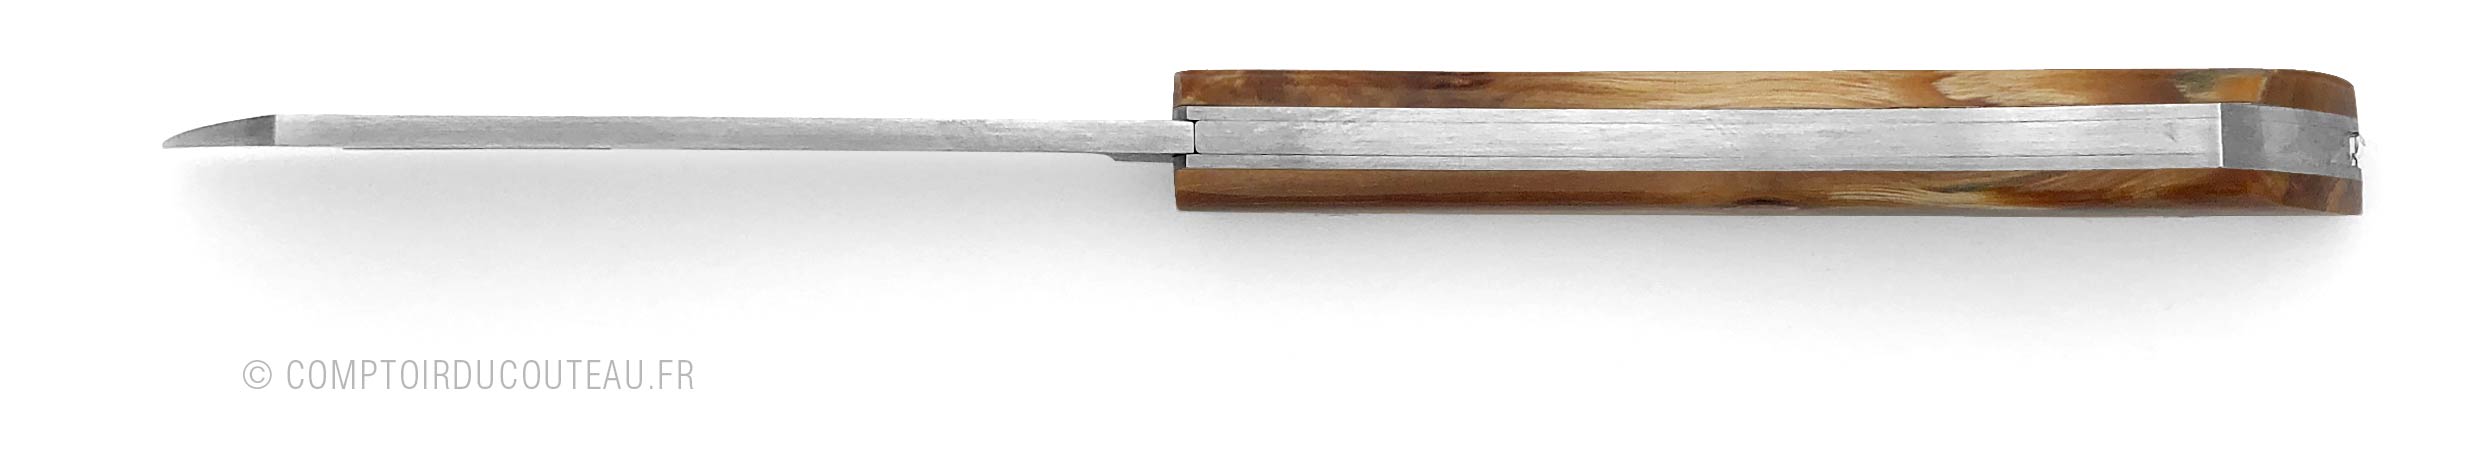 couteau de poche artisanal arca andrea bois de bouleau vue dessus